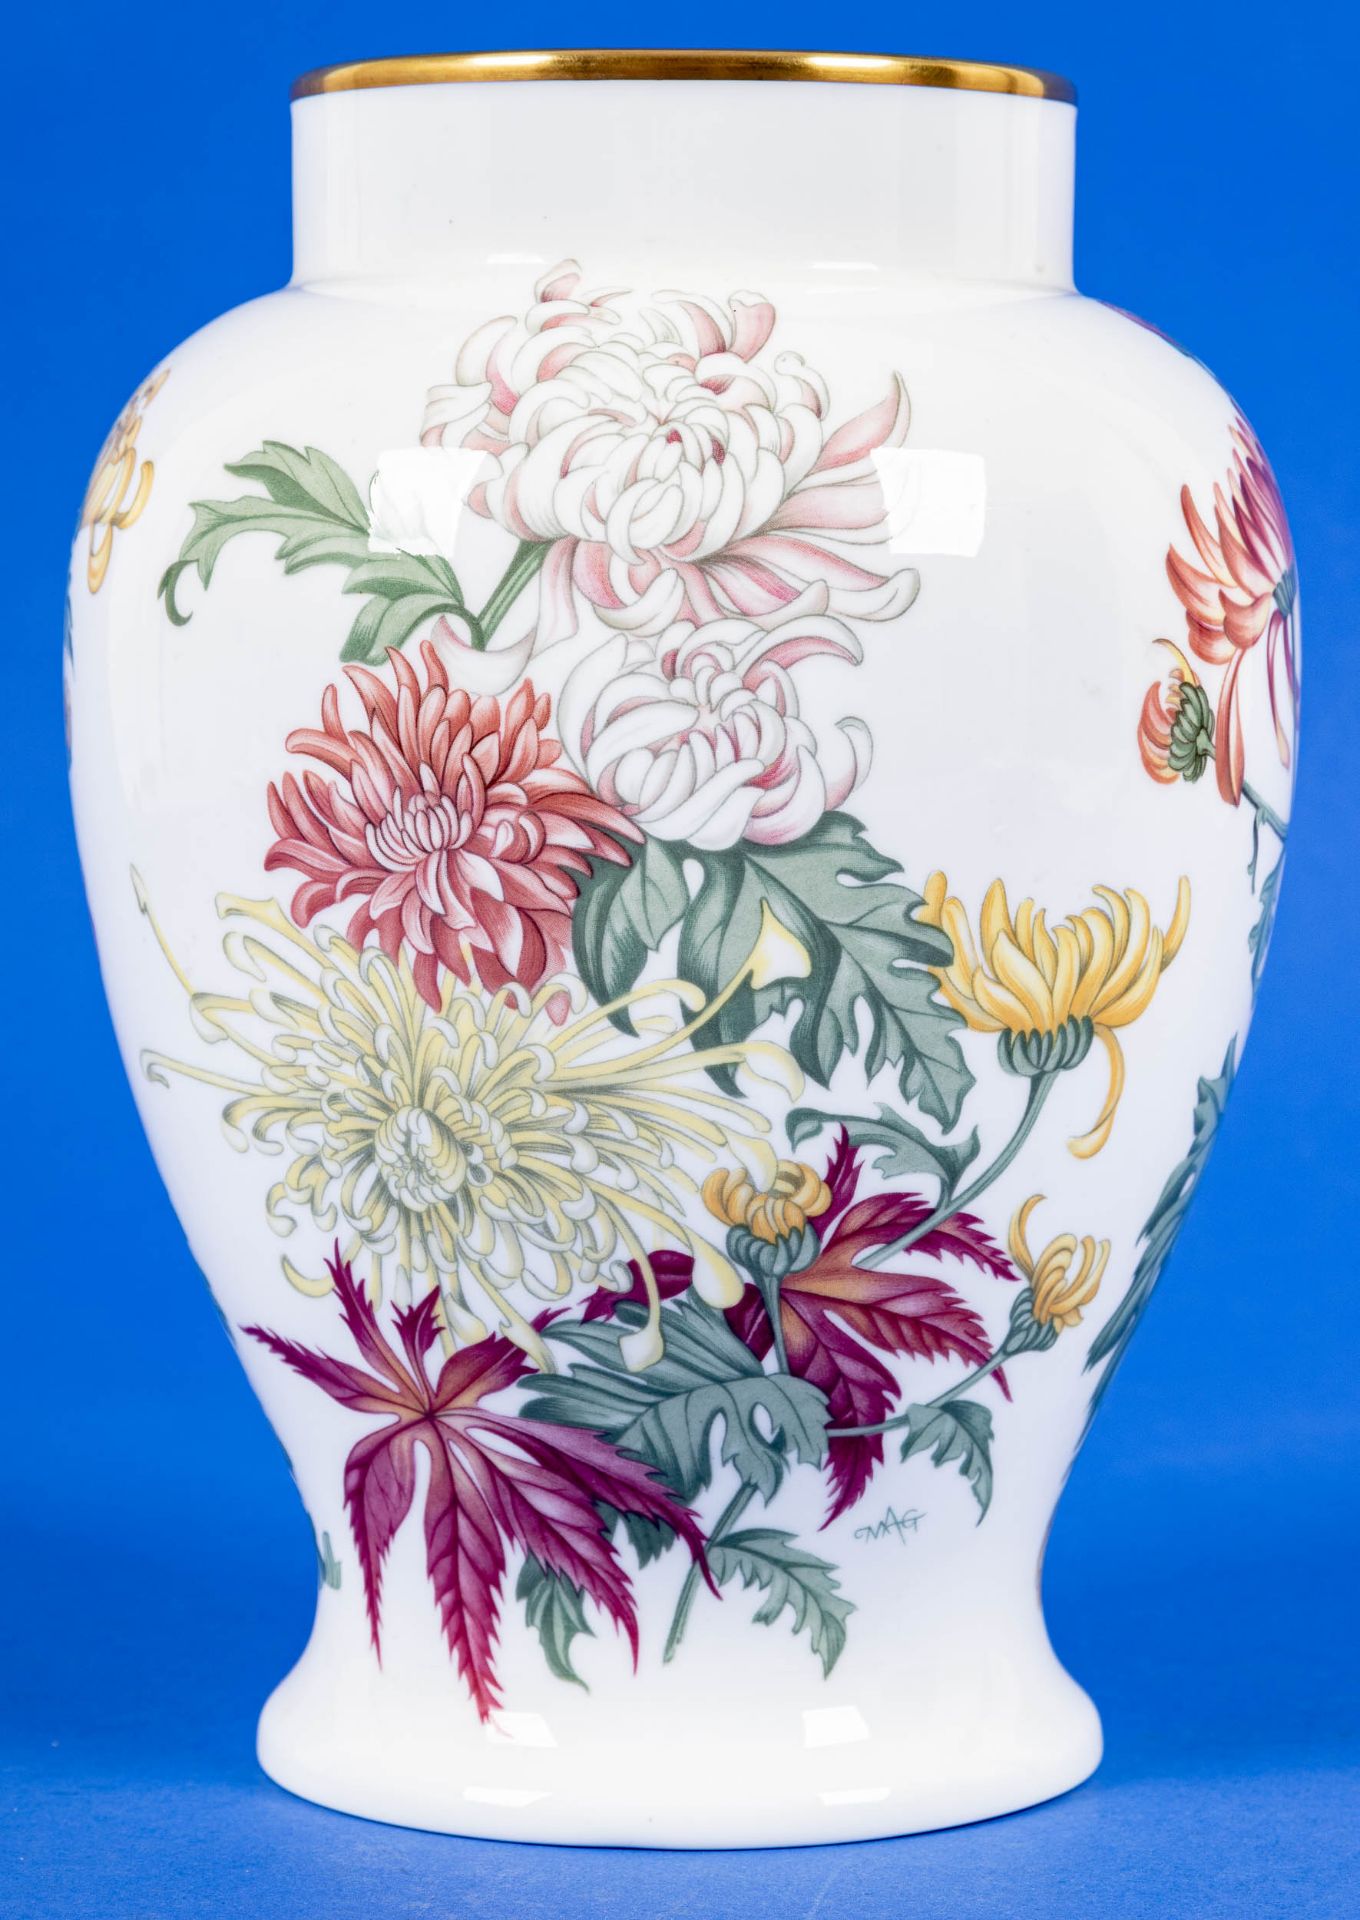 Gebauchte Blumenvase, Wedgewood, Bone-China, Höhe ca. 21 cm, polychrom lithografierte Floraldekore, - Image 4 of 5